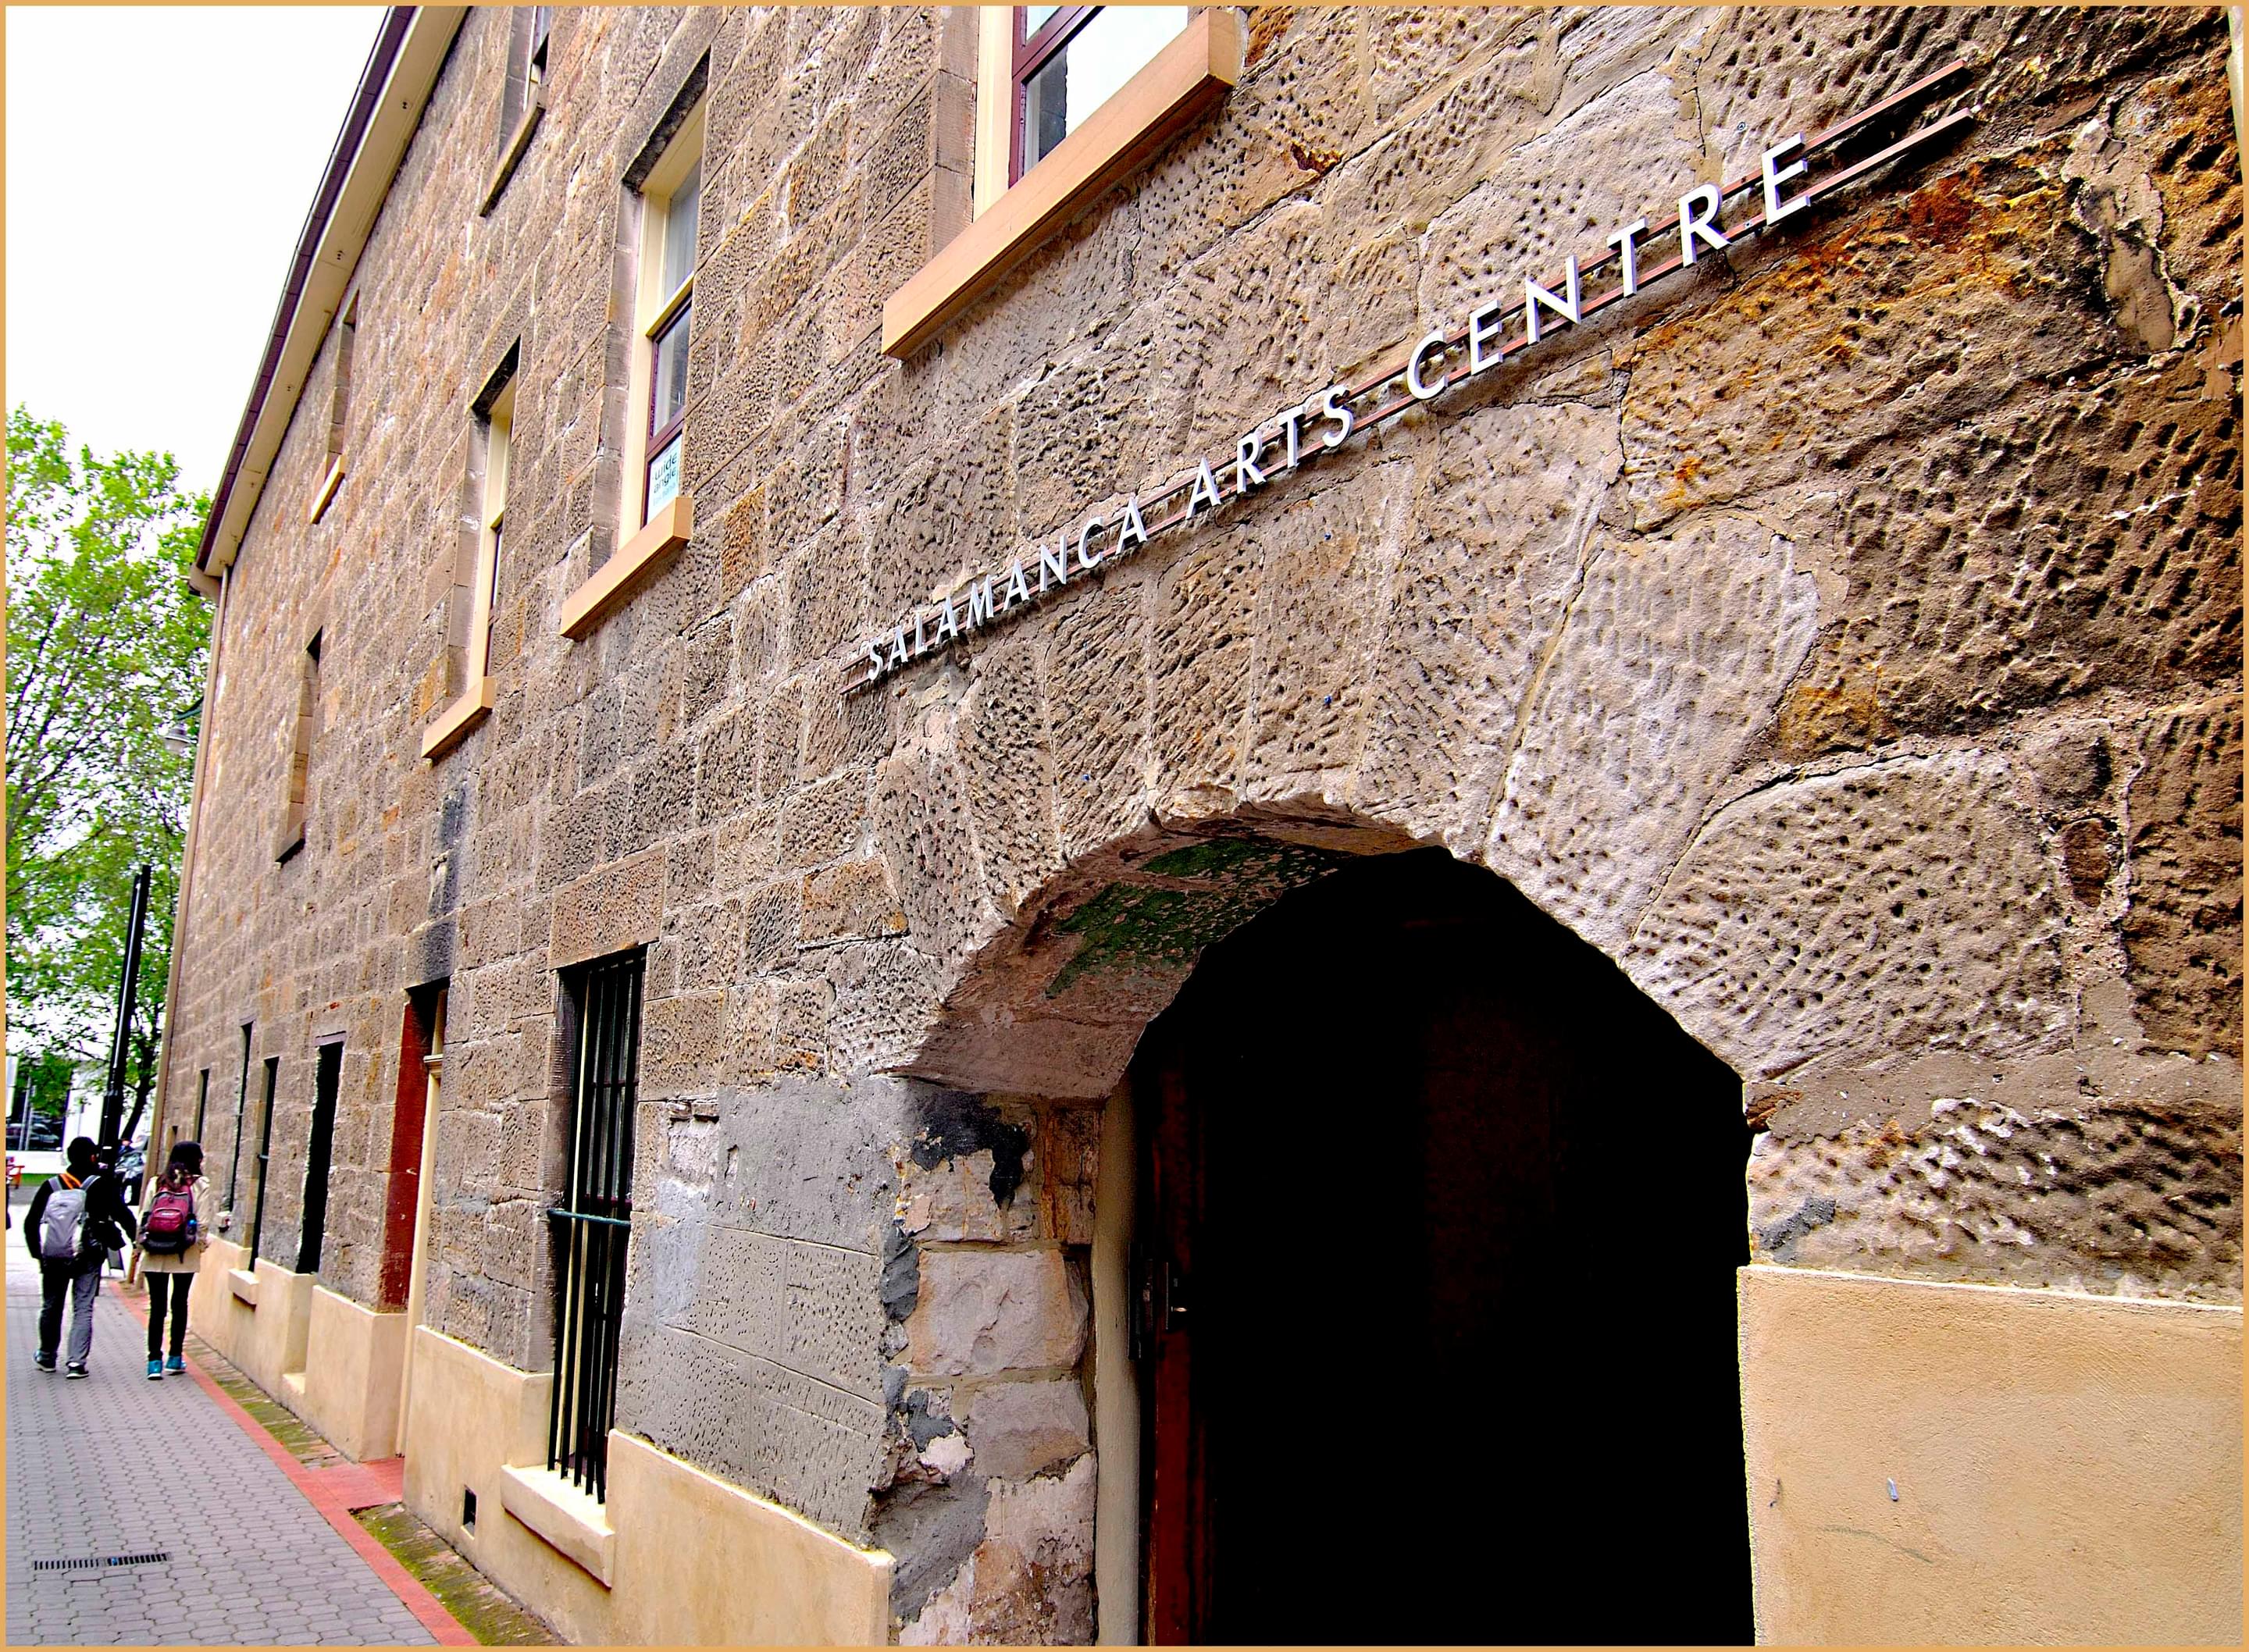 Salamanca Arts Centre Overview